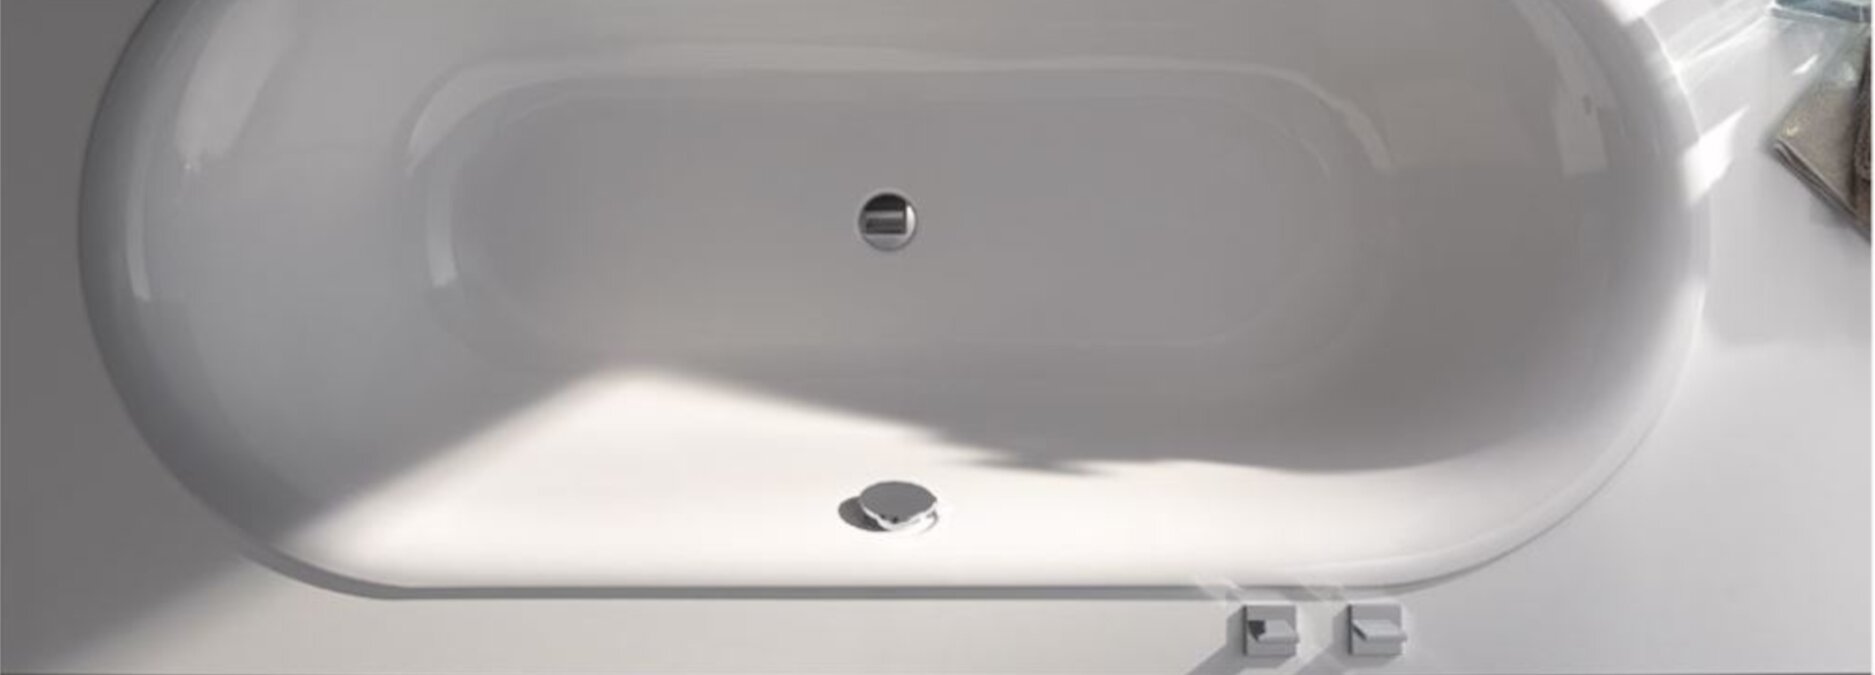 Elektronische und berührungslose Armaturen: Das Must-Have für Ihr modernes Bad! - Elektronische Armaturen | Blog ssd-armaturenshop.de